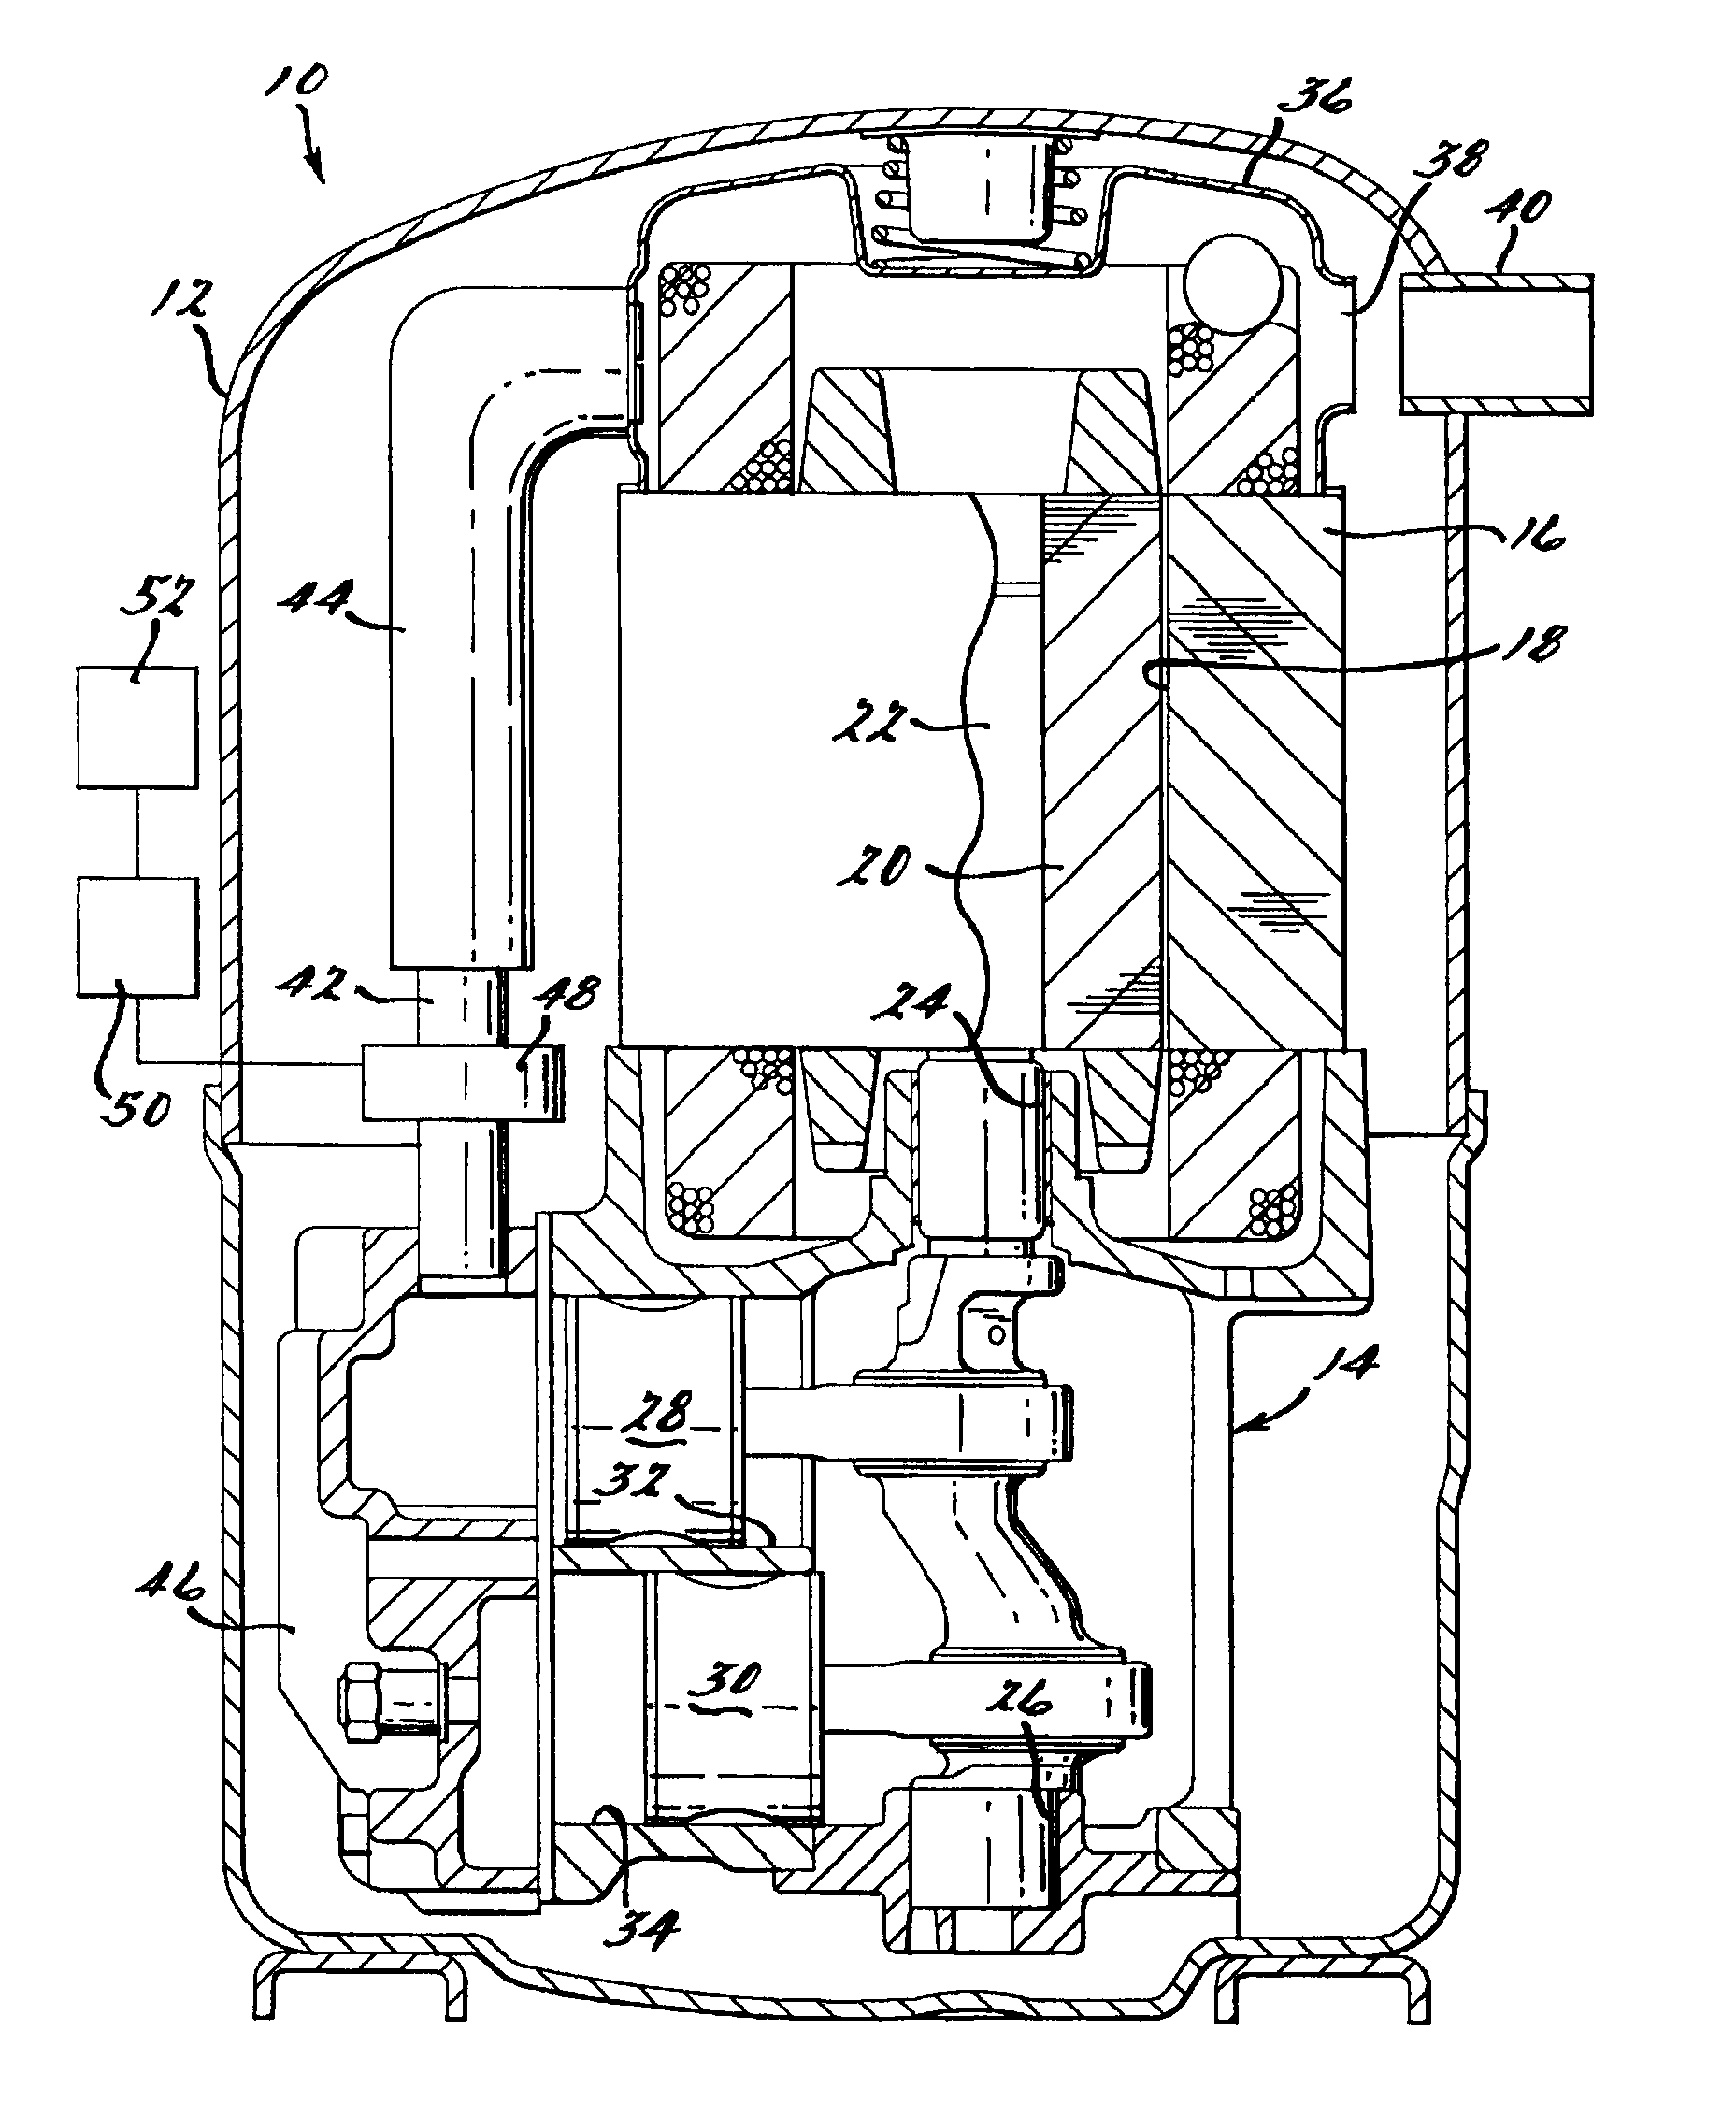 Compressor capacity modulation